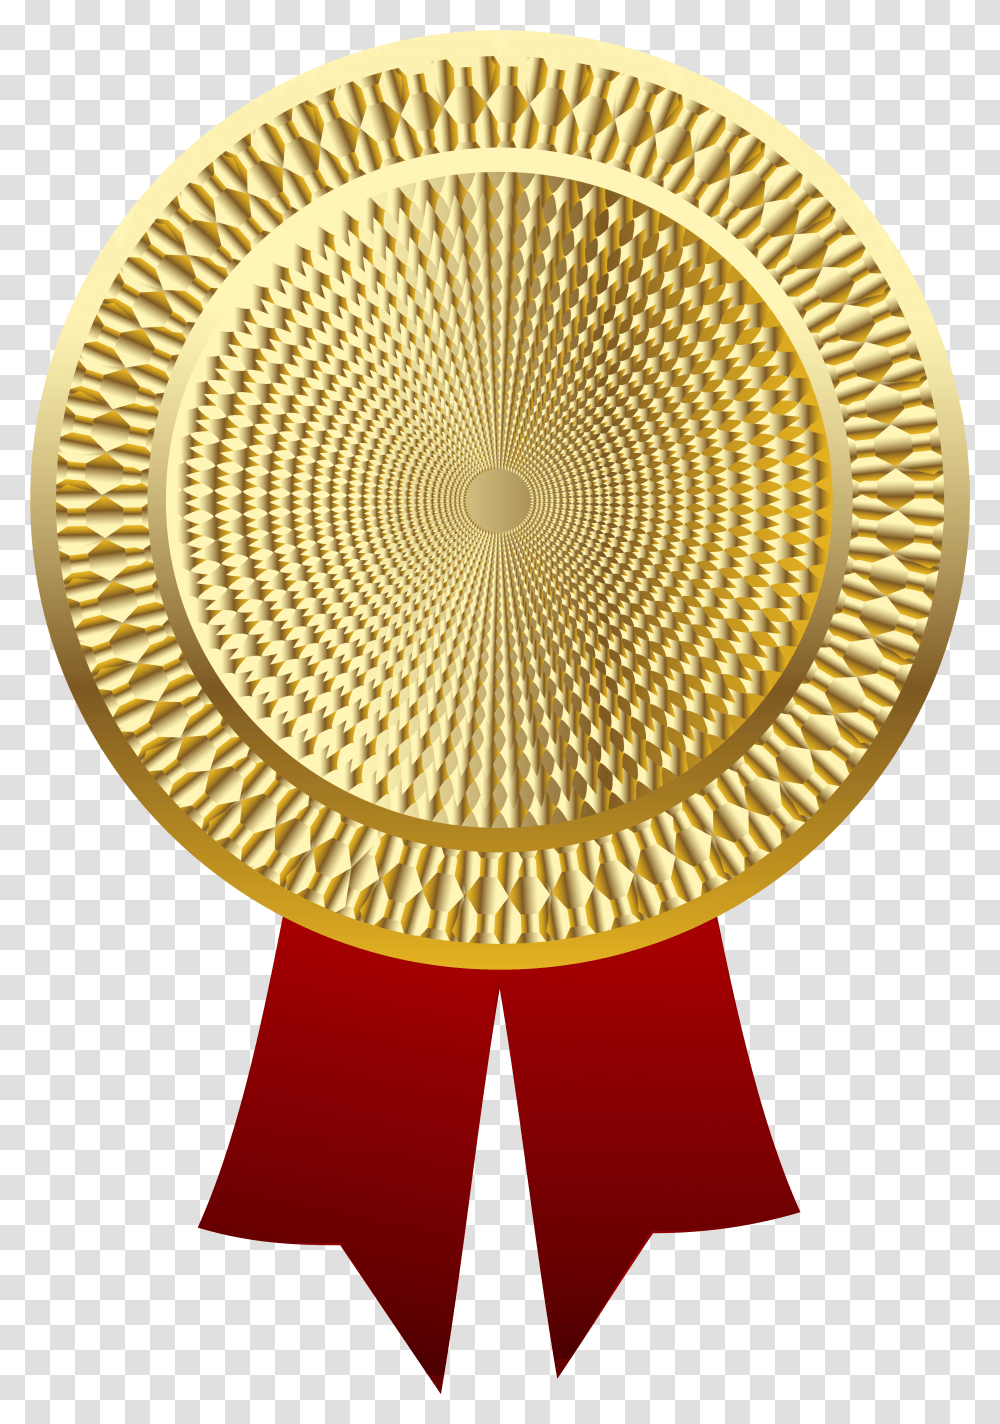 Golden Medal Clipart Image Medal Background, Lamp, Trophy, Chandelier, Gold Medal Transparent Png